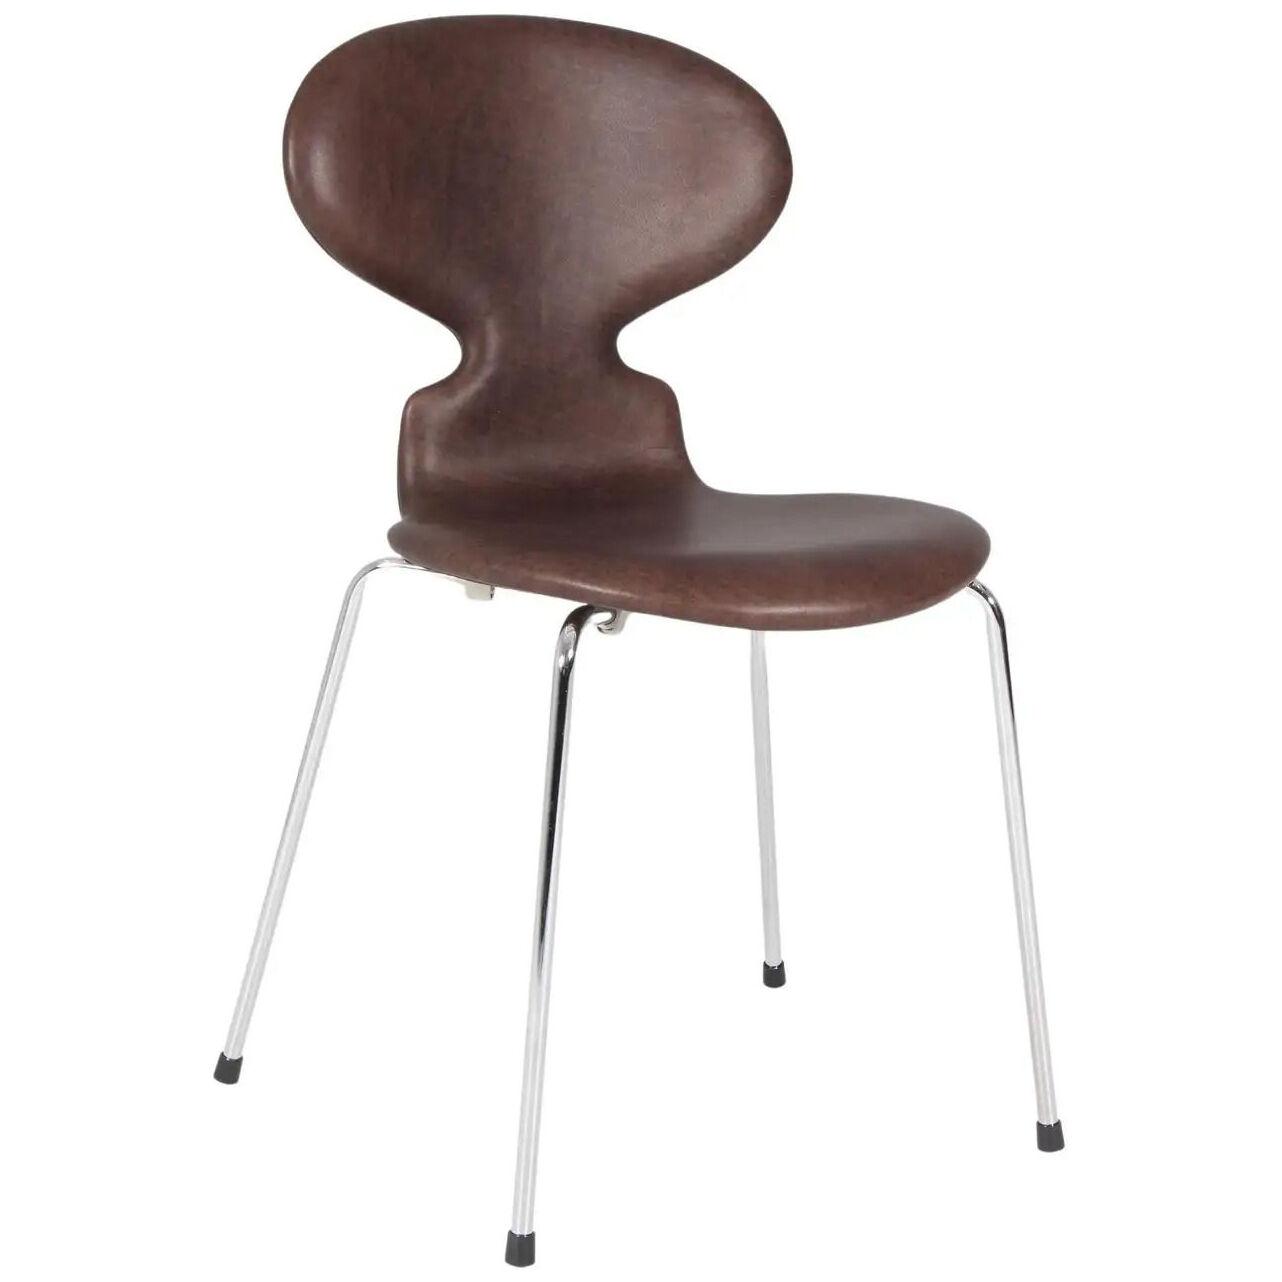 Arne Jacobsen, Dining Chair Model 3101 "Ant"